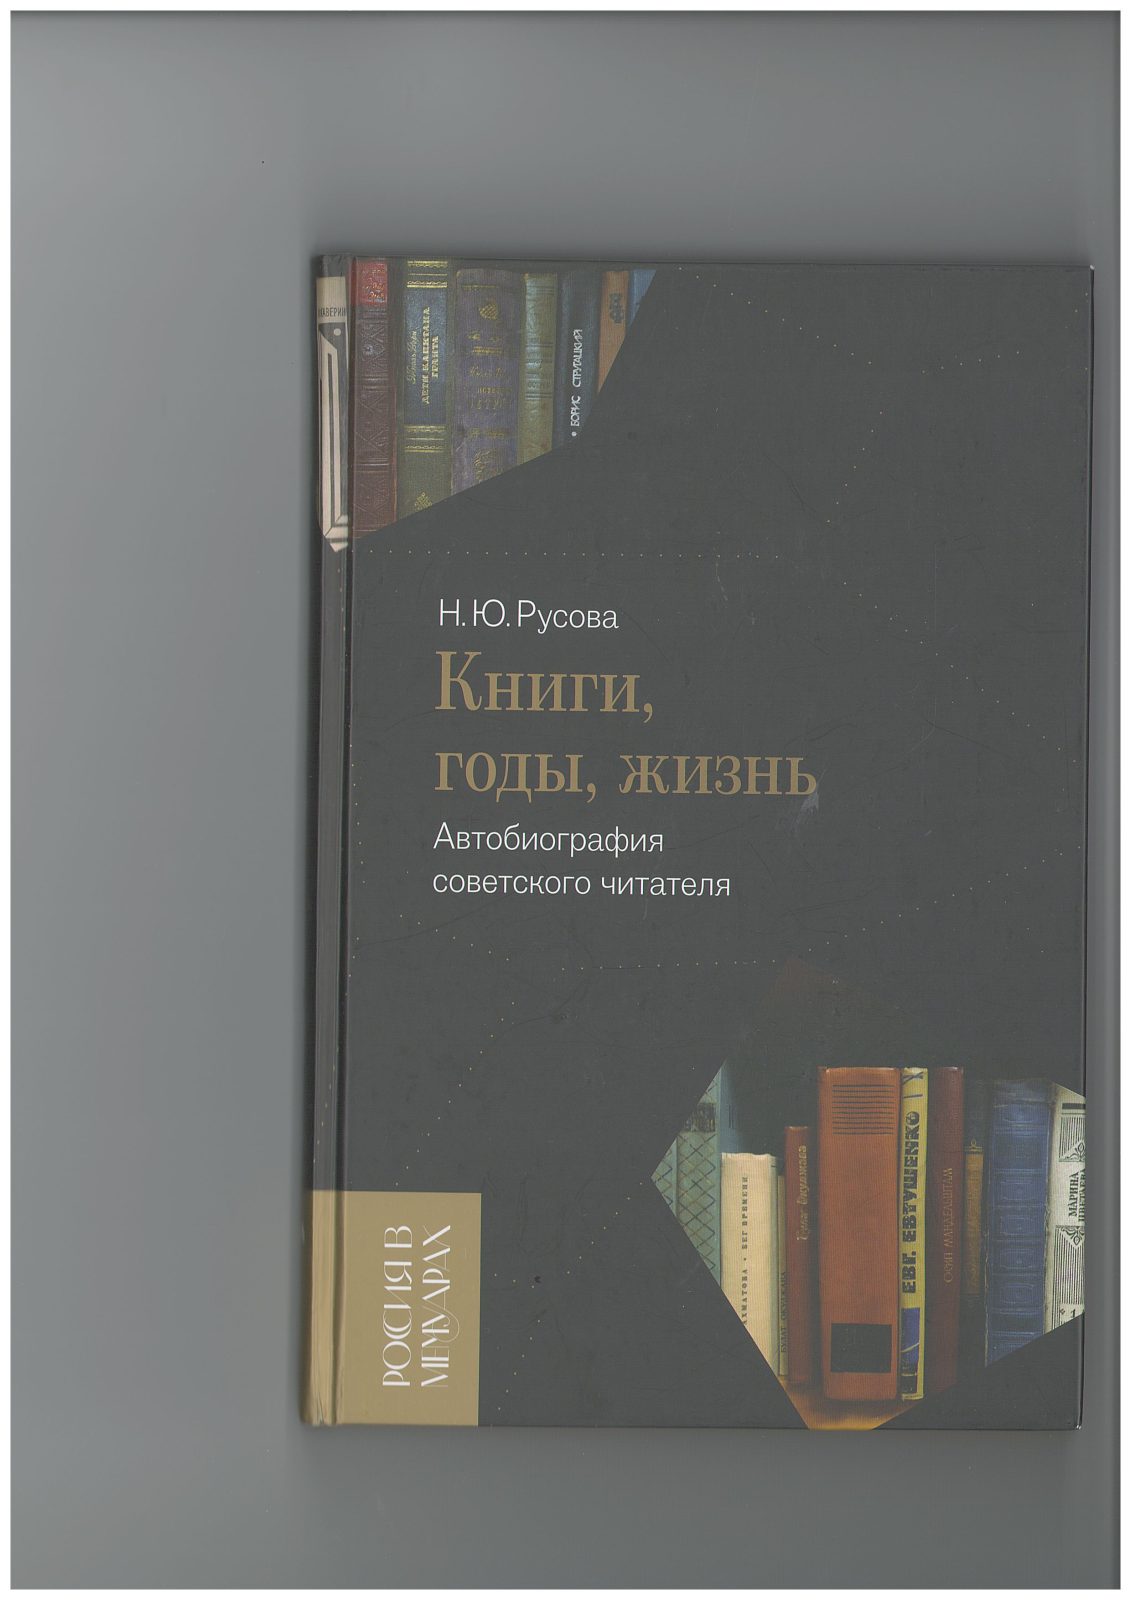 Вышла в свет книга Н.Ю. Русовой «Книги, годы, жизнь»